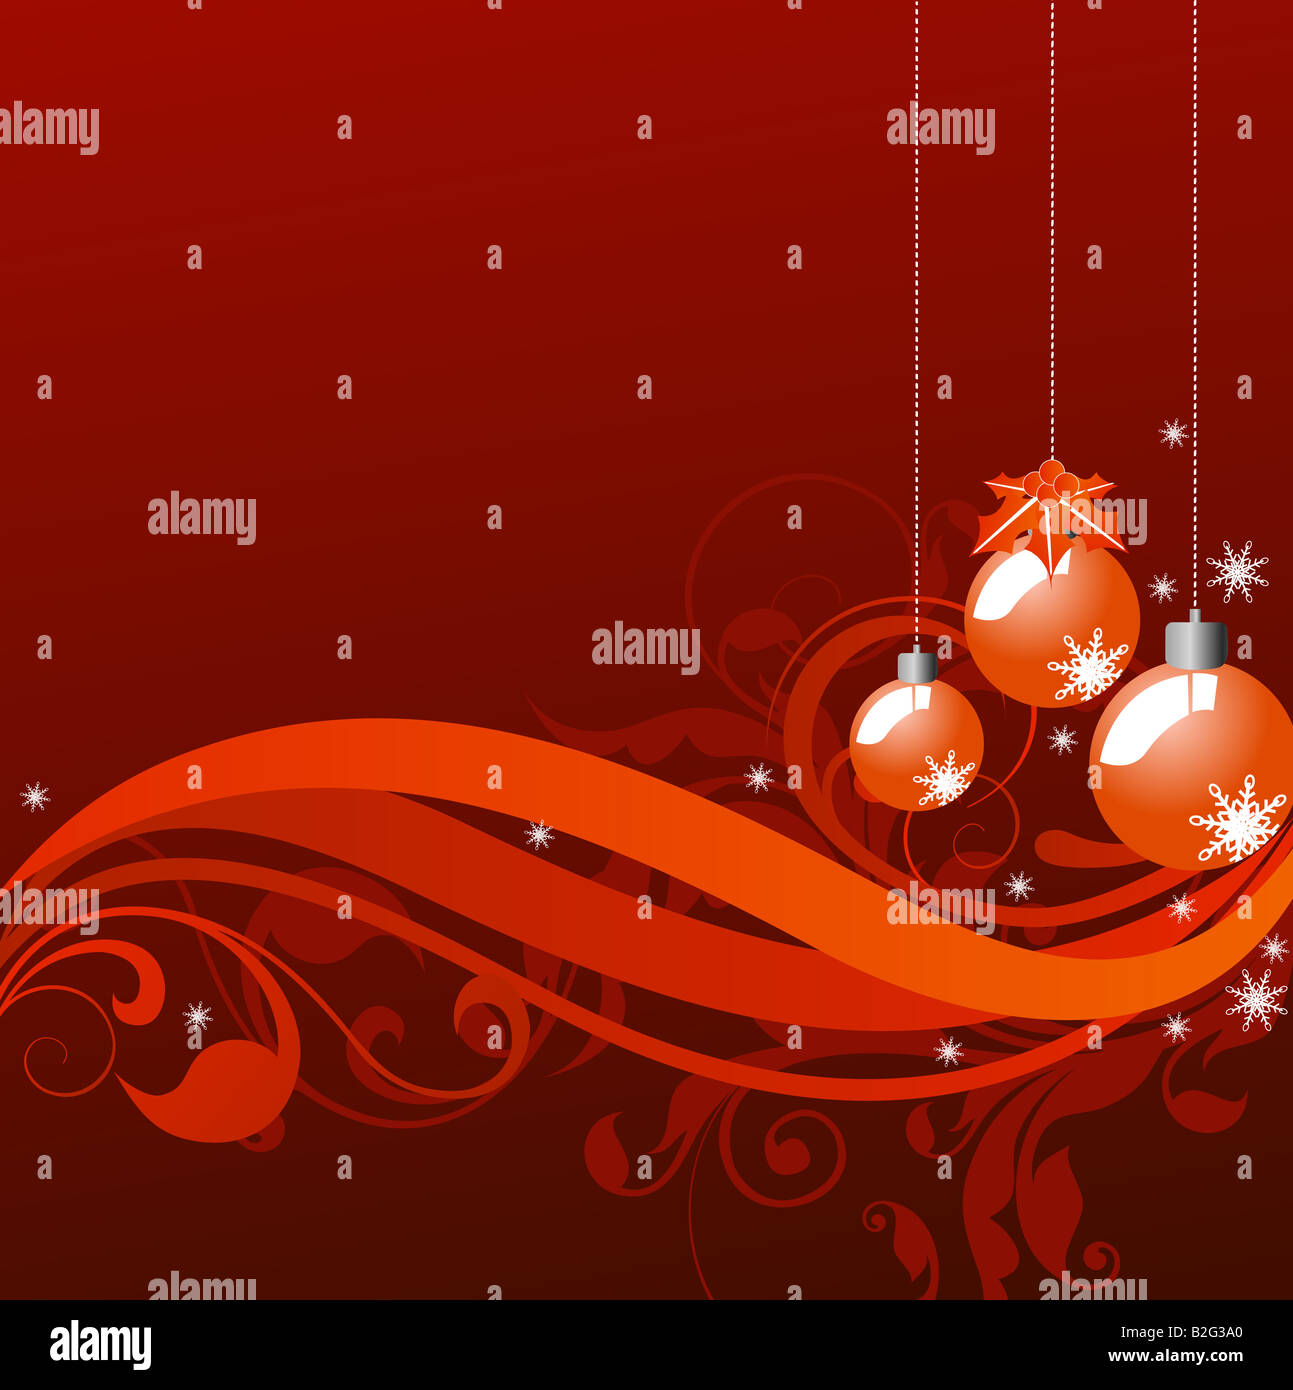 Abbildung von Weihnachten Hintergrund zeichnen Stockfoto